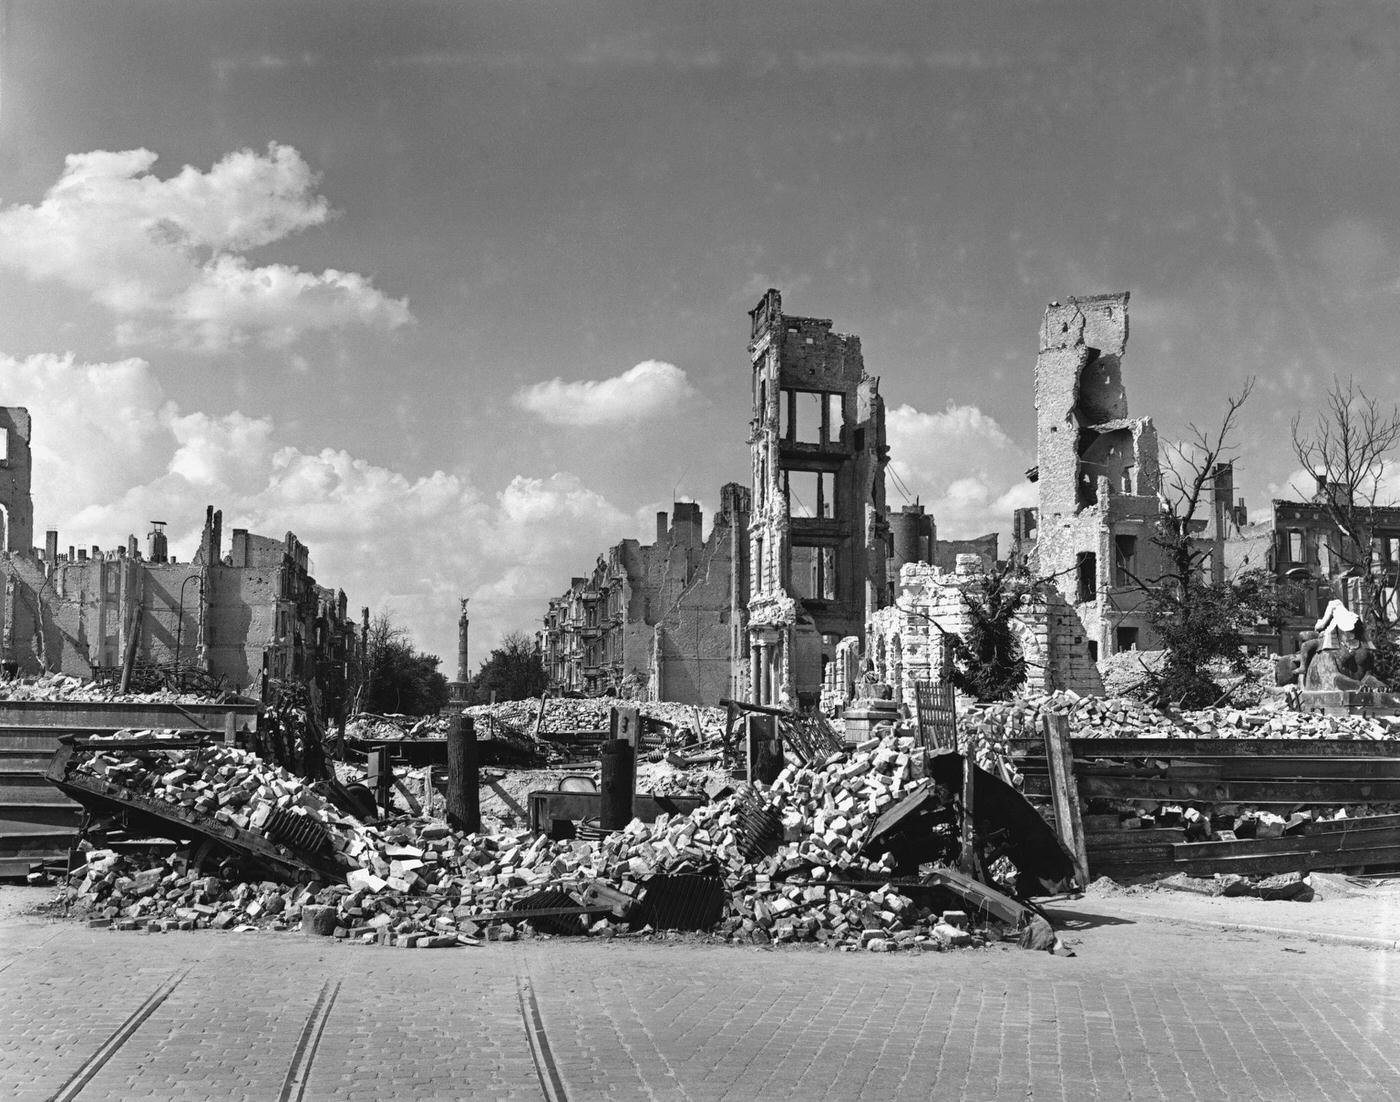 Berlin devastated after World War II, Zeagas Zola Franco, Berlin, Germany.